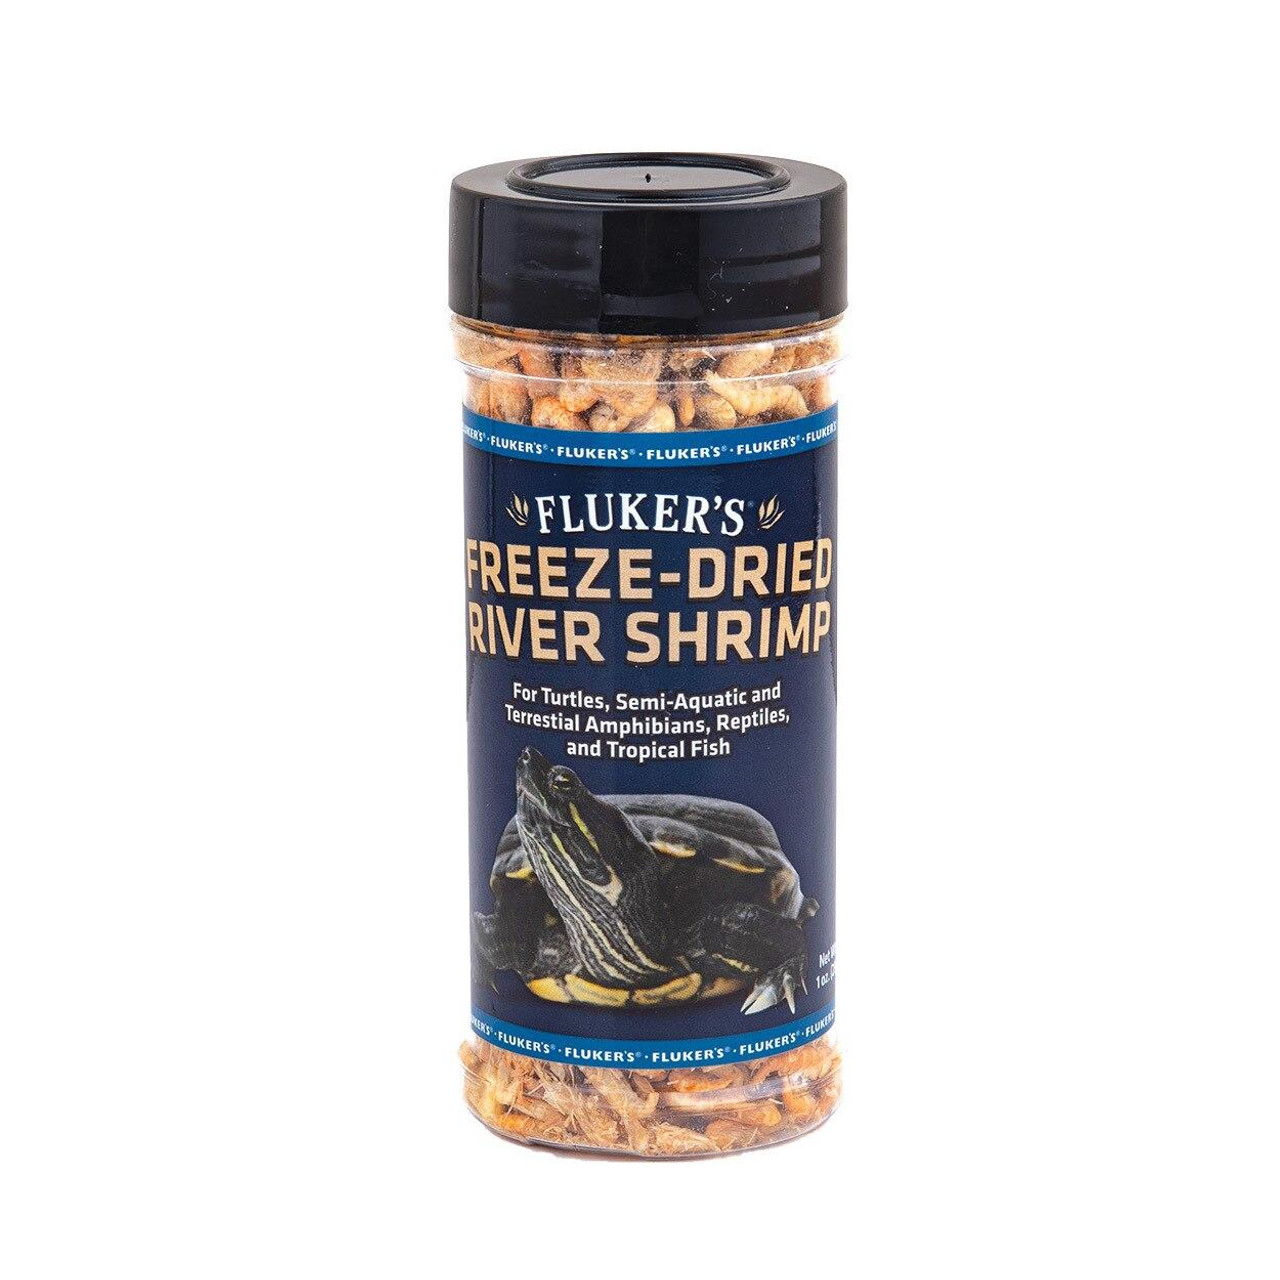 Flukers FLUKERS Freeze-Dried River Shrimp - 1 oz